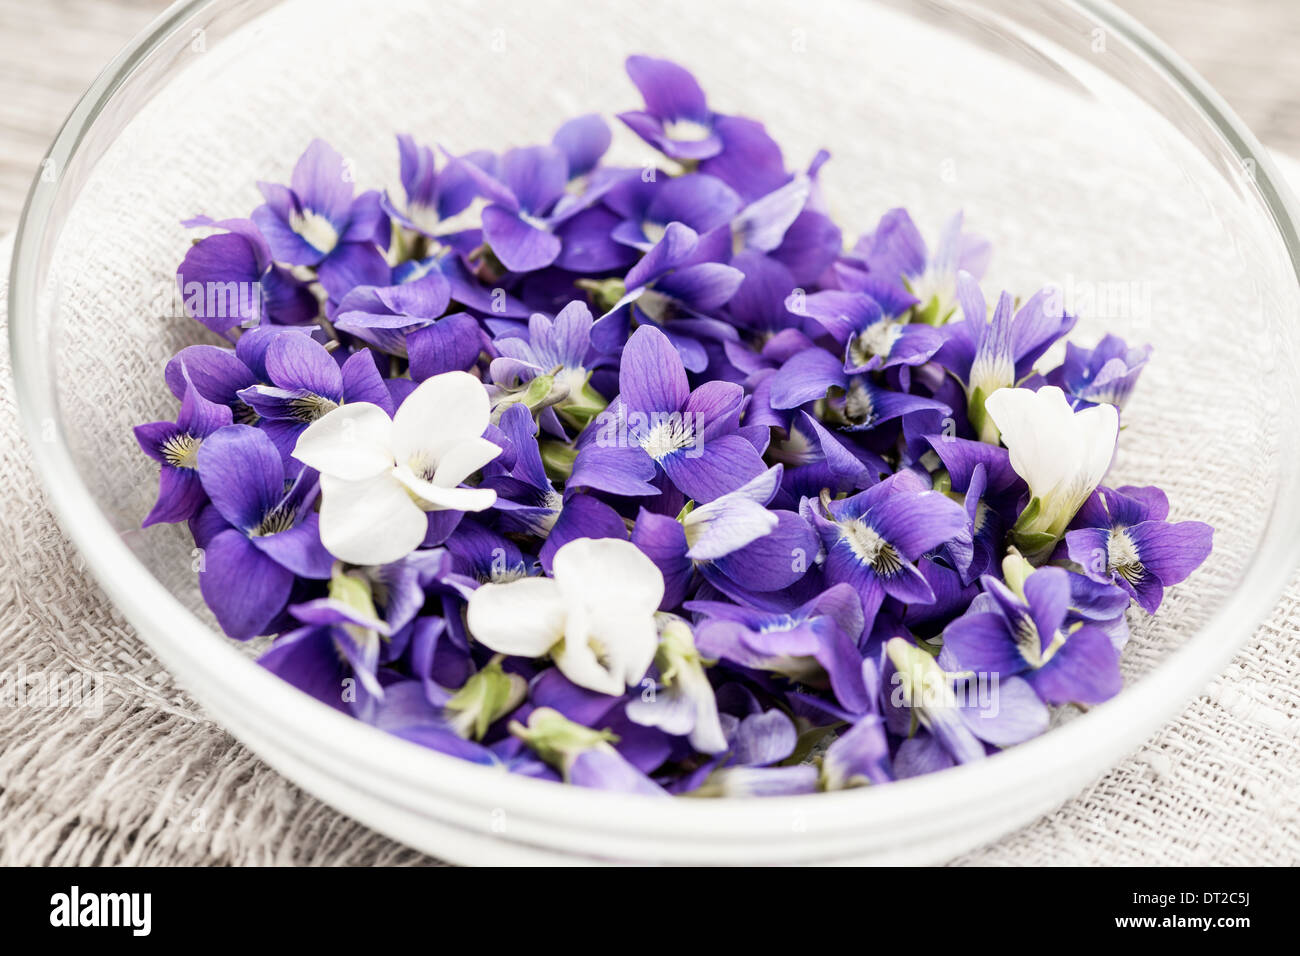 Sammelpflanzen essbare lila und weißen violetten Blüten in Schüssel Stockfoto